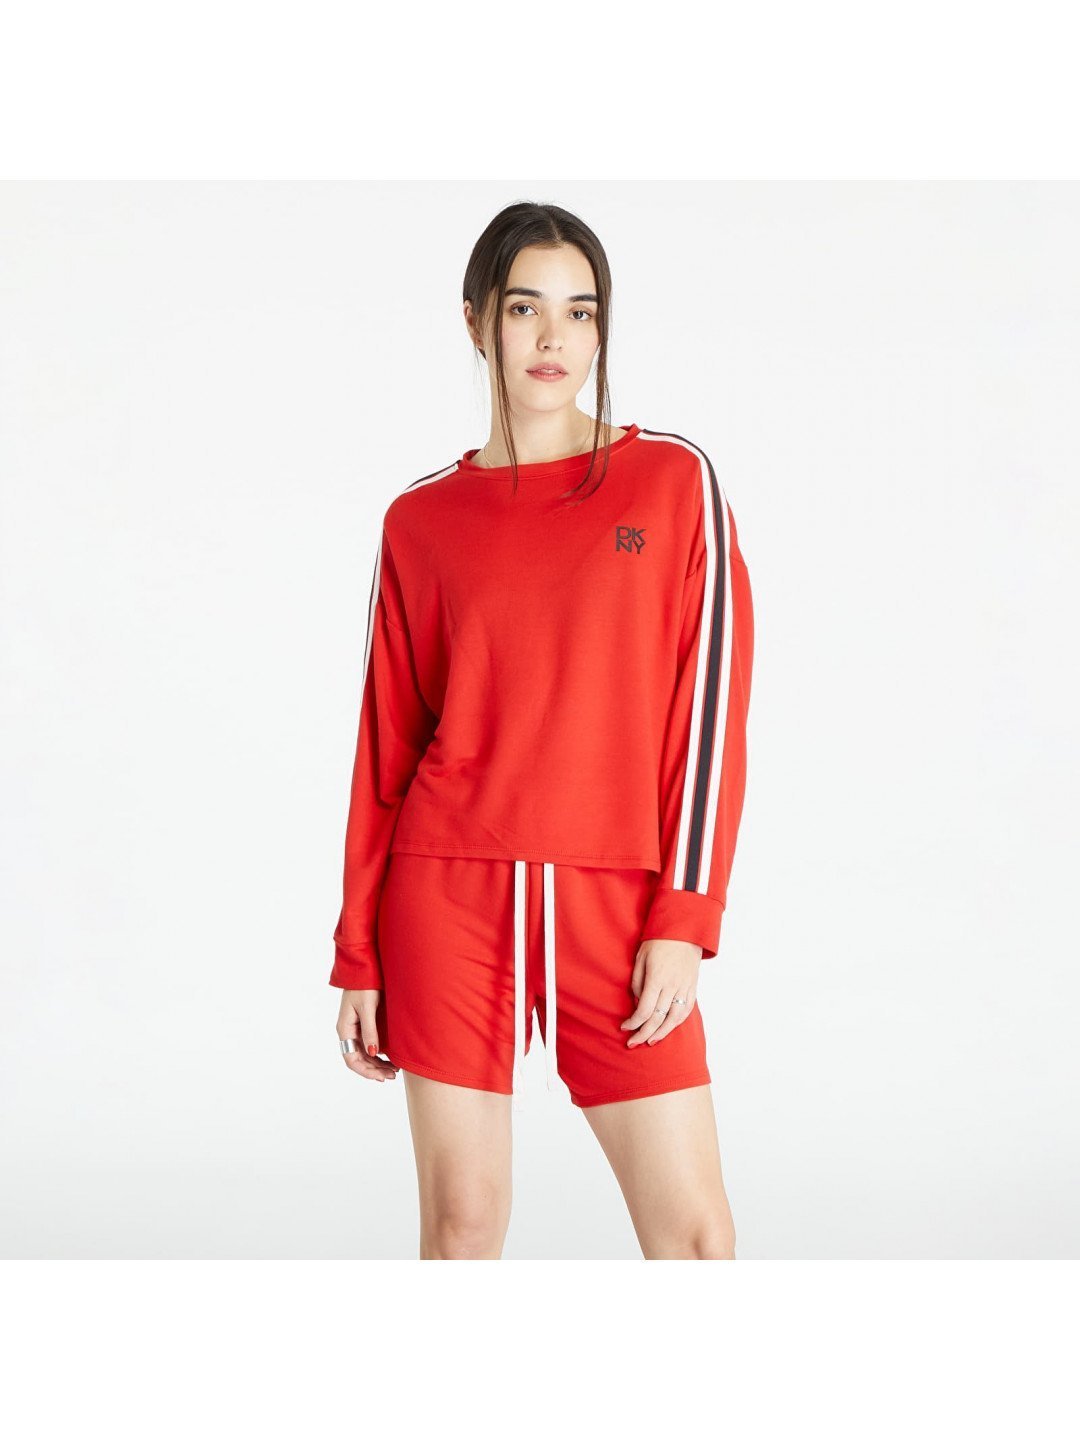 DKNY Pyjama TOP Long Sleeves Sweatshirt Red